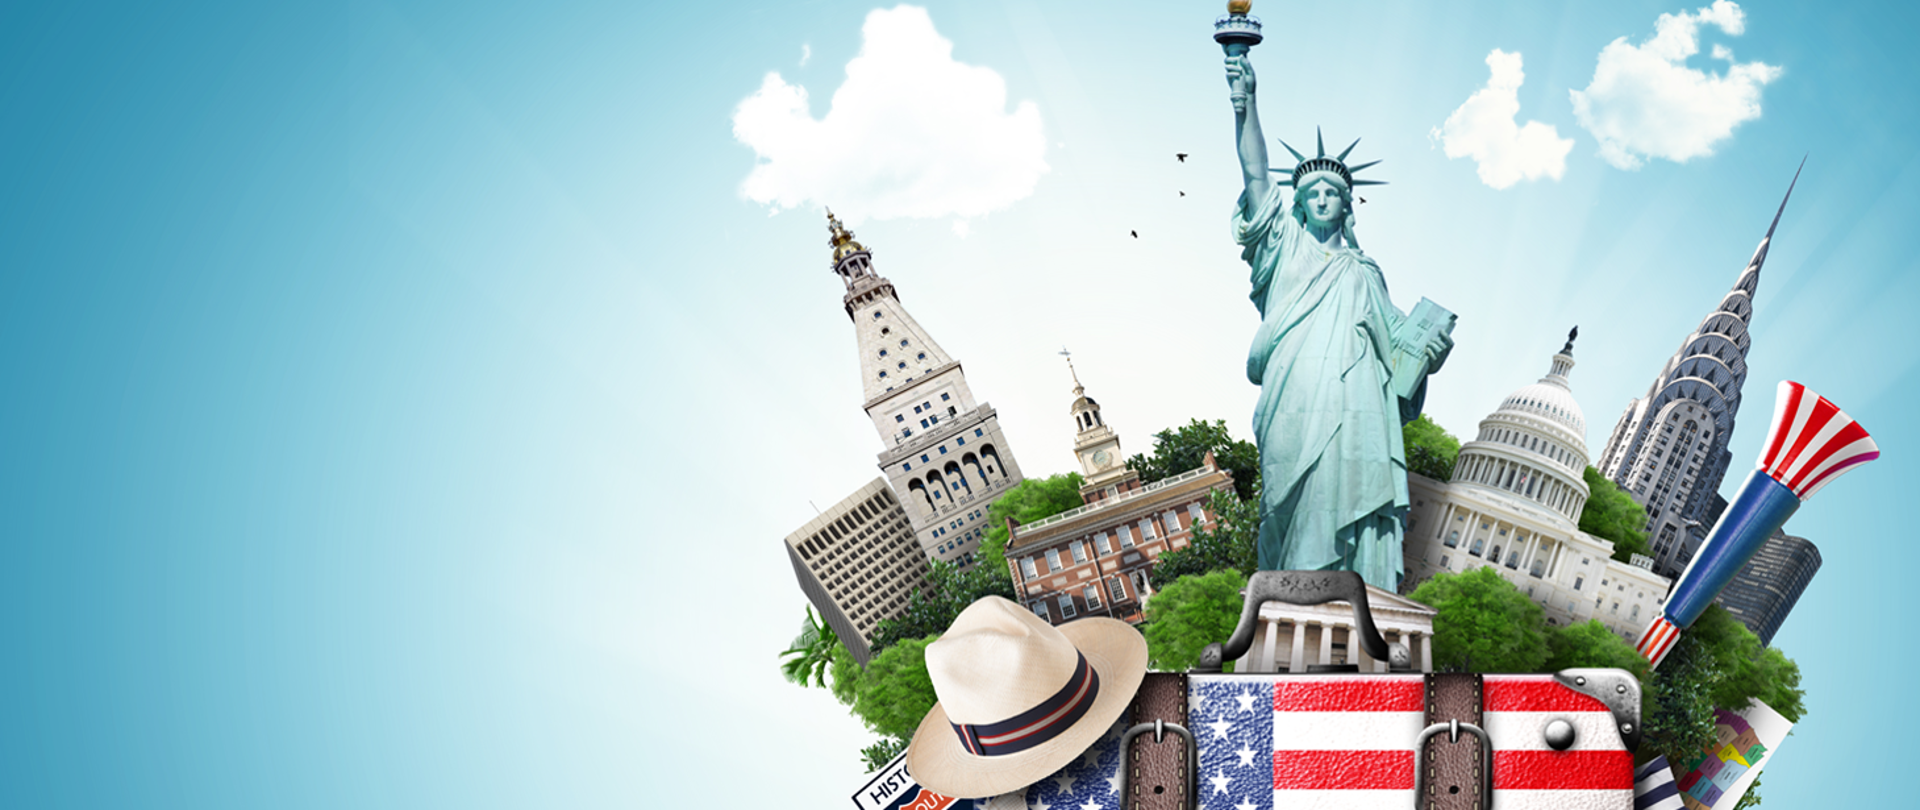 Informacja dla podróżujących do USA w związku ze zniesieniem ograniczeń dotyczących COVID-19